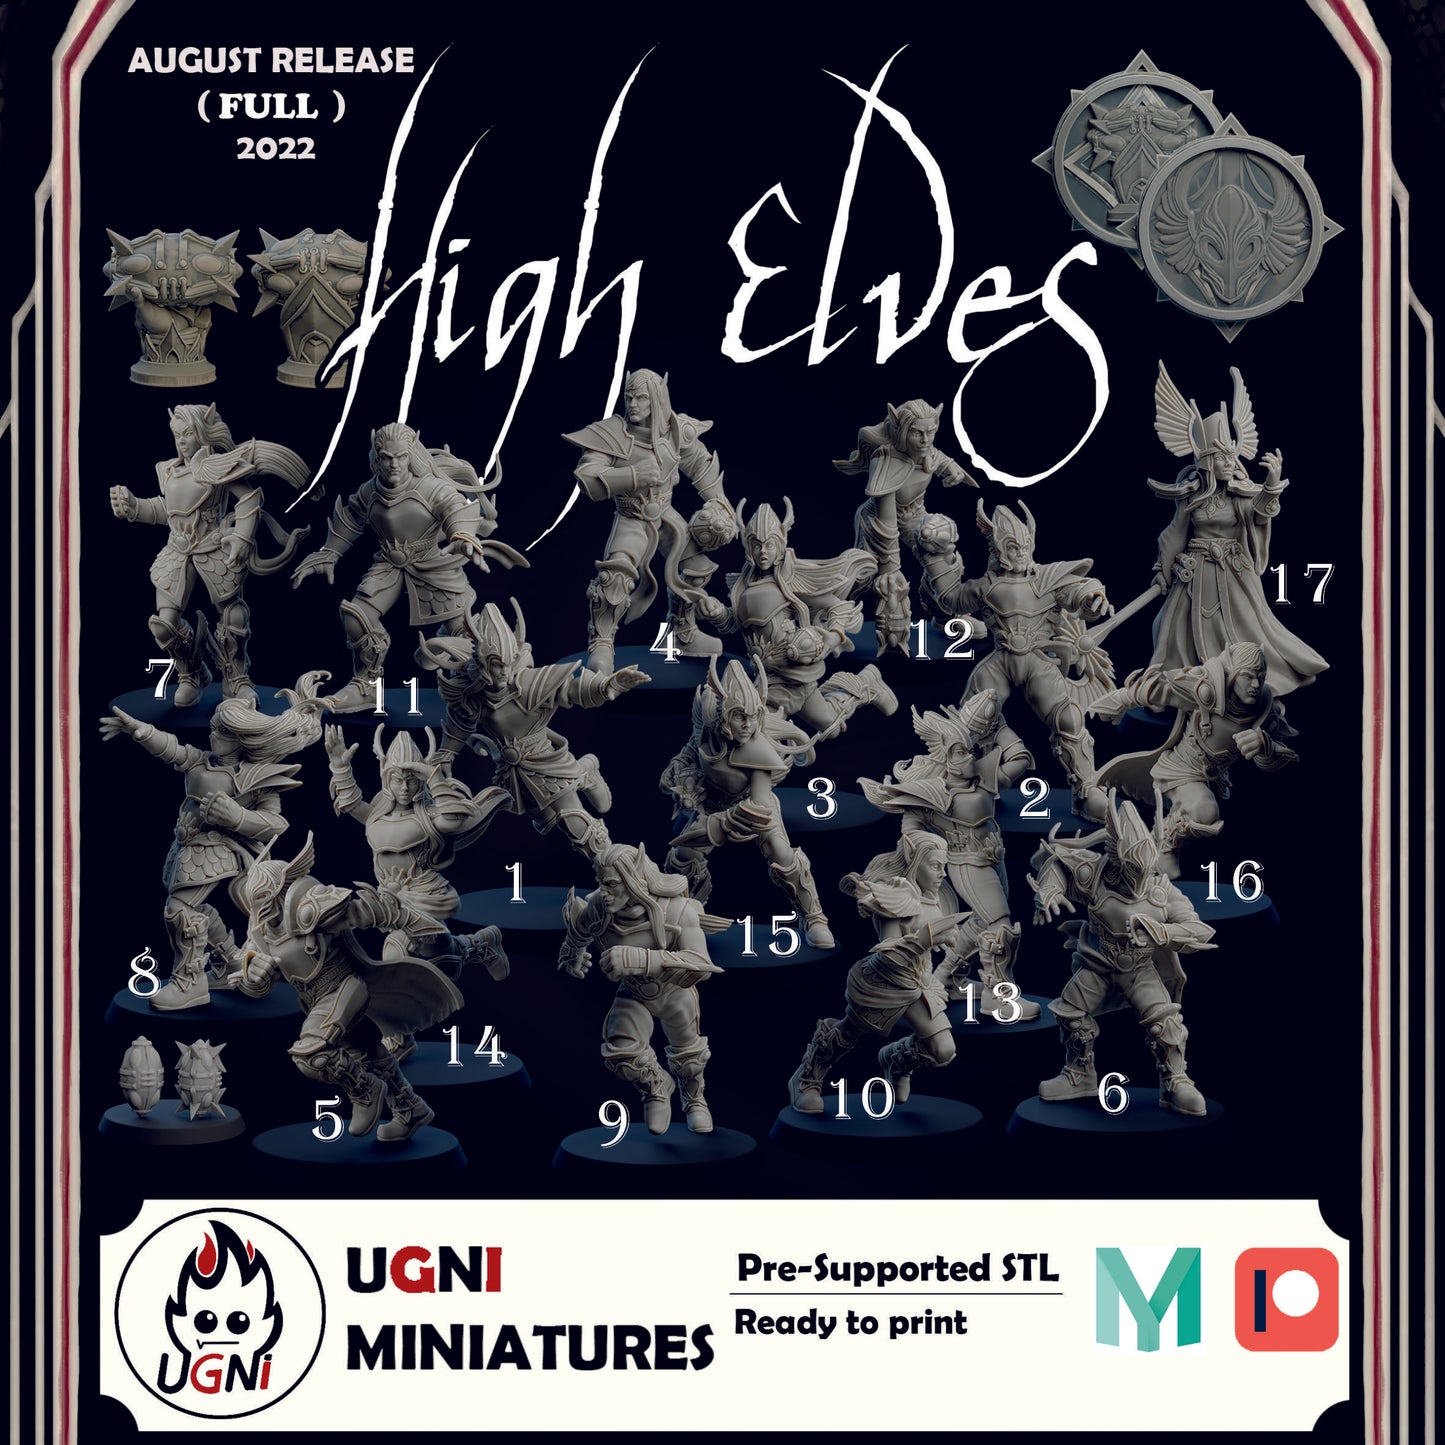 High Elves Team - High Elves | UGNI Miniatures | Resin